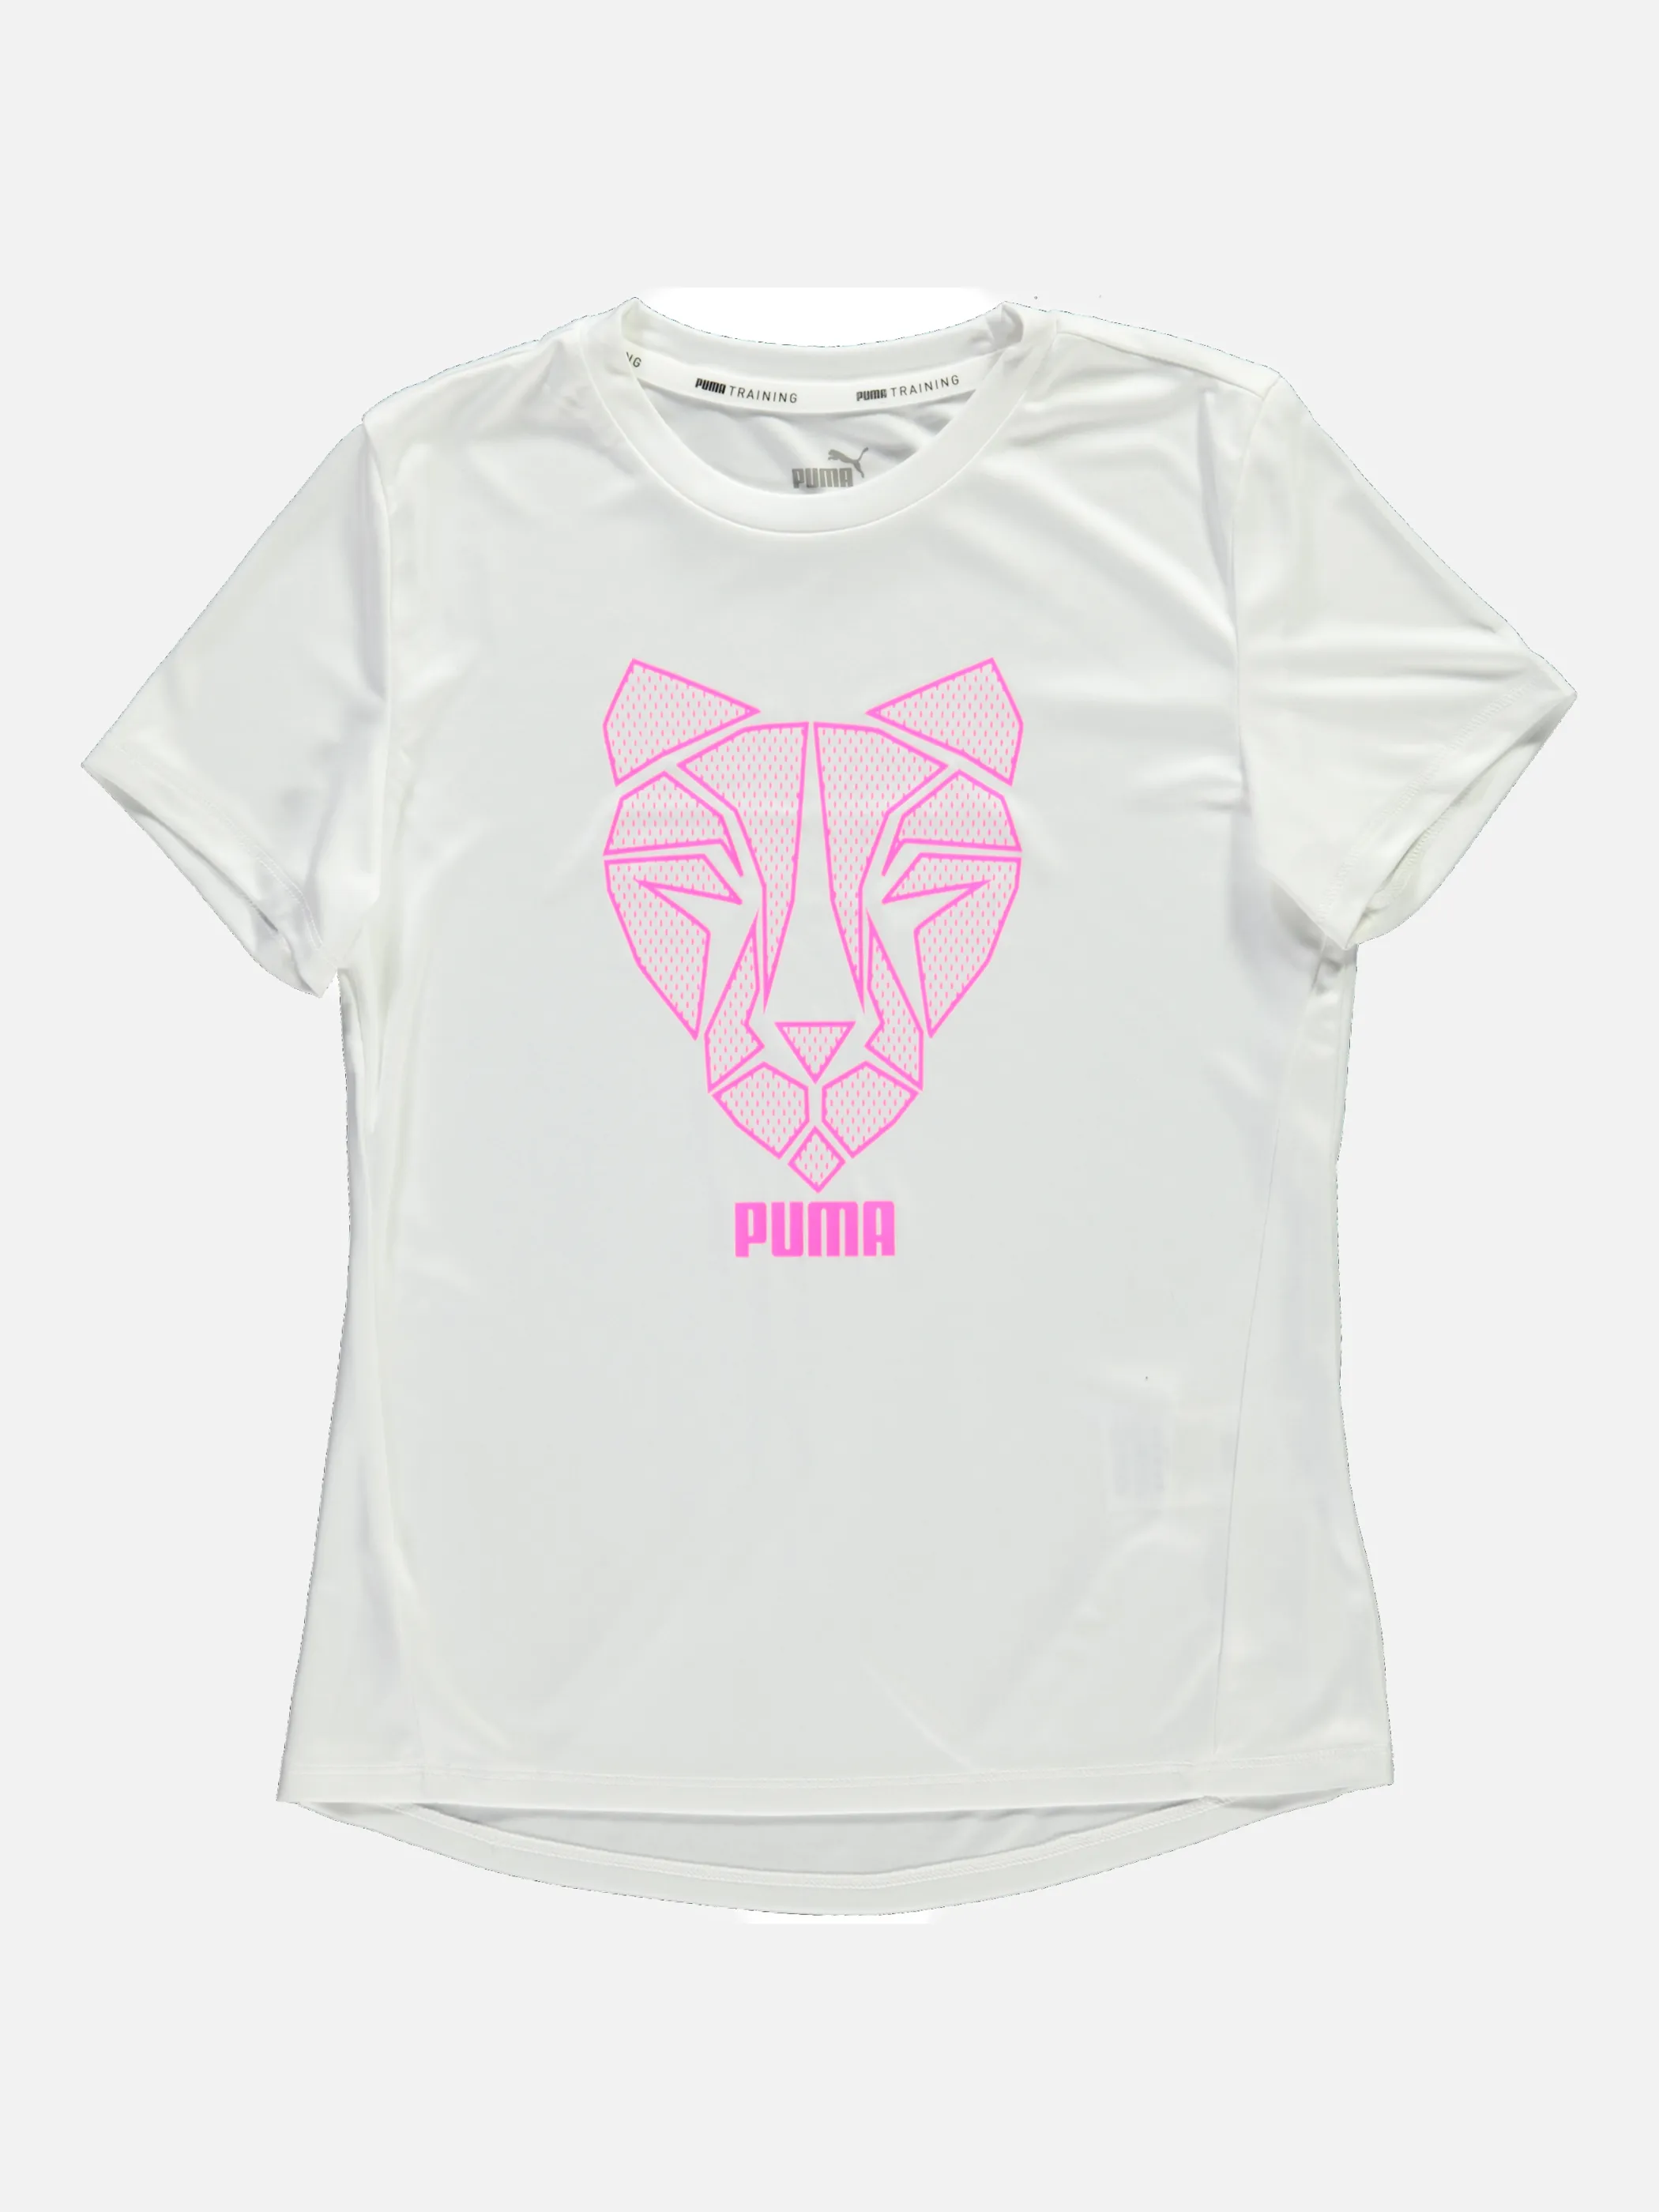 Puma 583331 Md-Logo-Shirt Weiß 839185 02 1